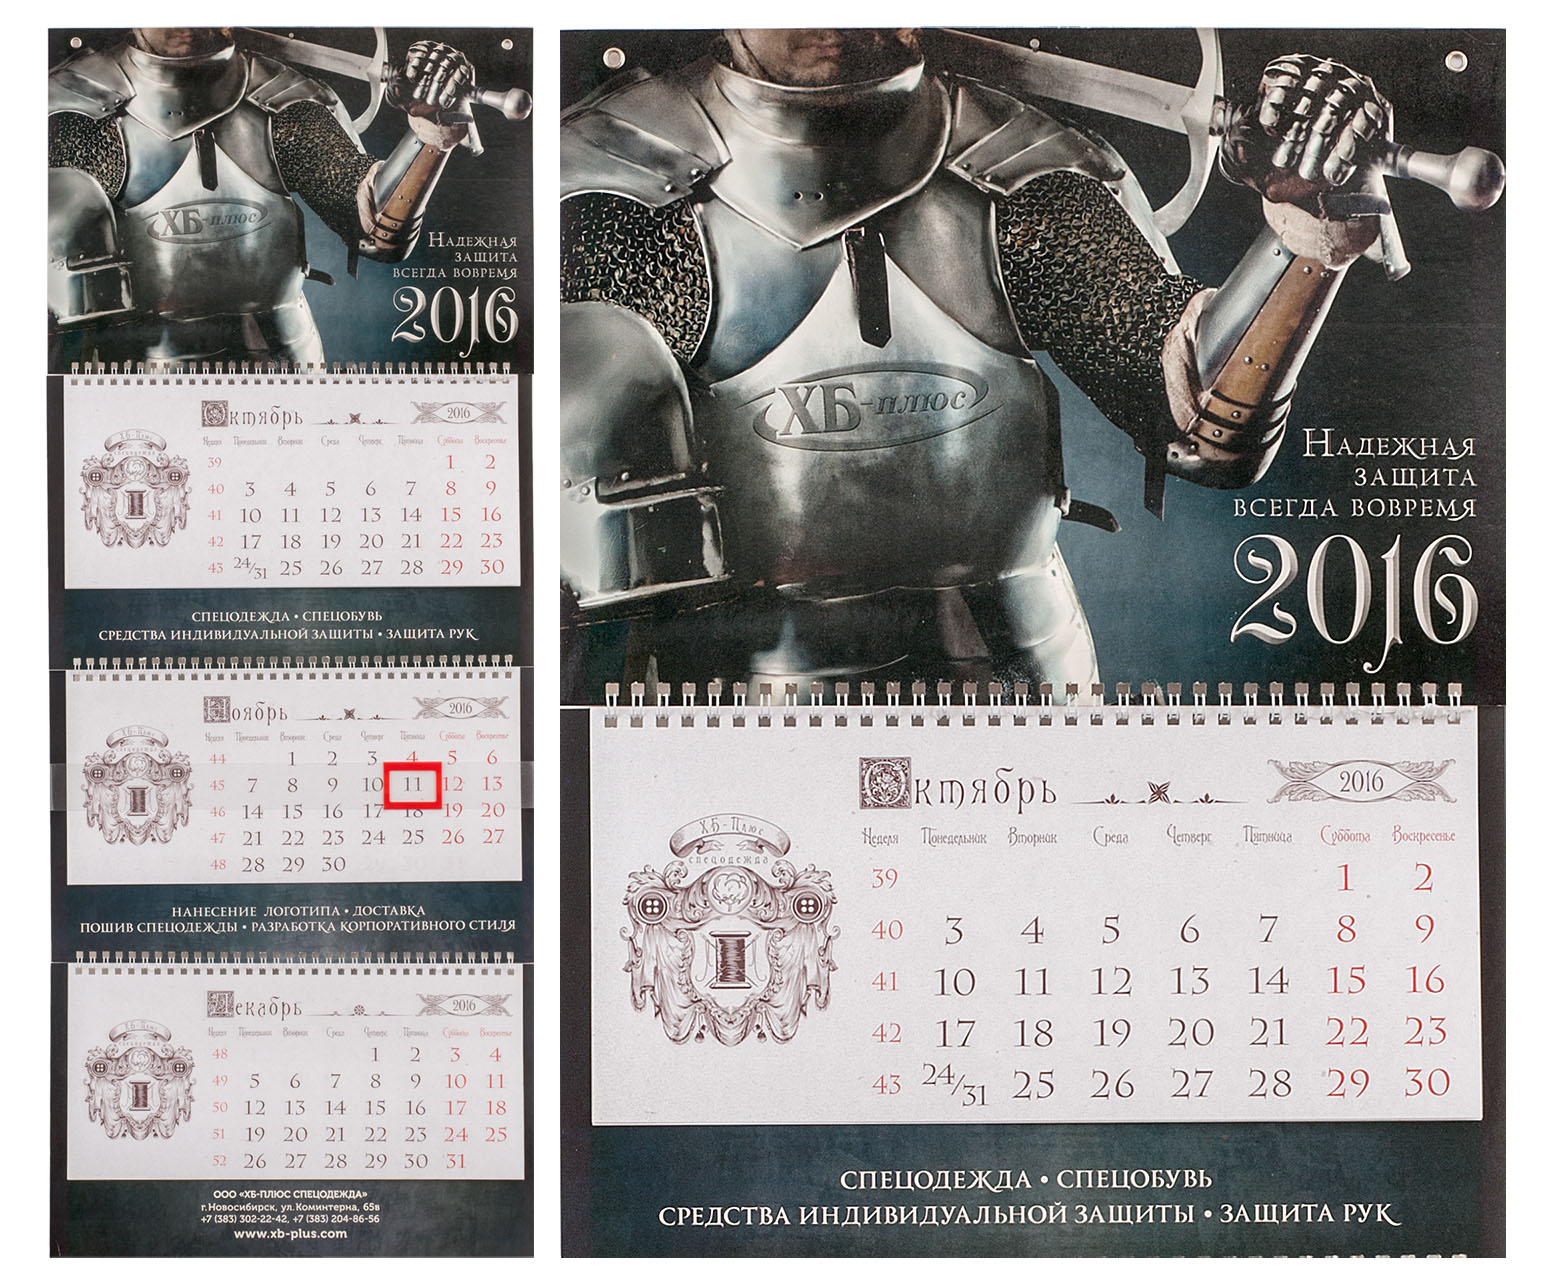 дизайн корпоративного календаря «Надёжная защита»